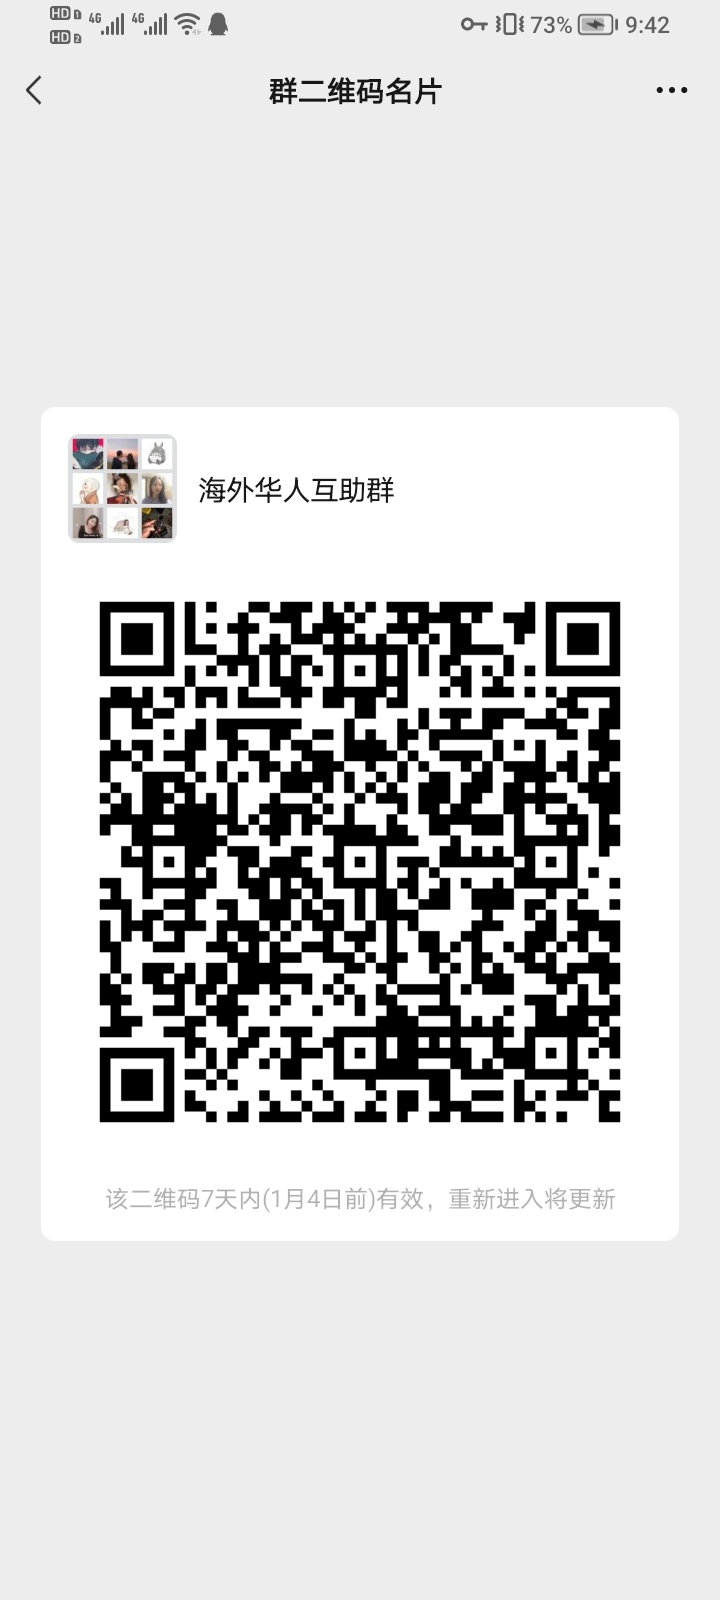 海外华人回国互助群 群微信二维码